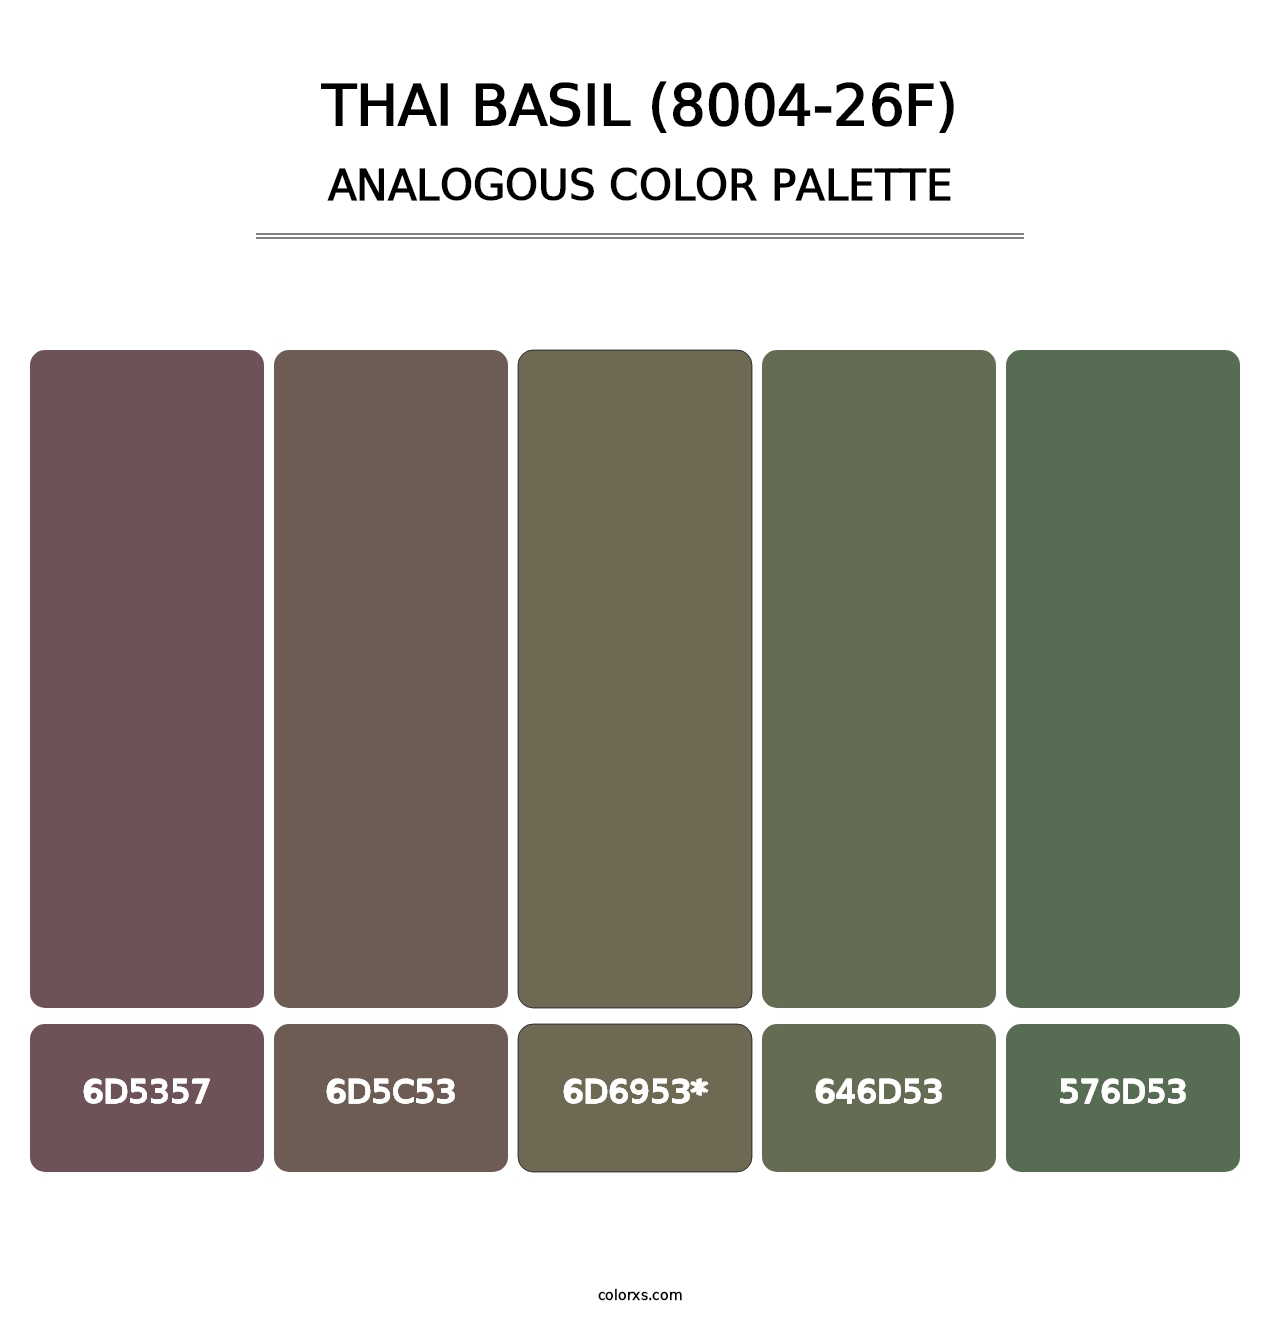 Thai Basil (8004-26F) - Analogous Color Palette